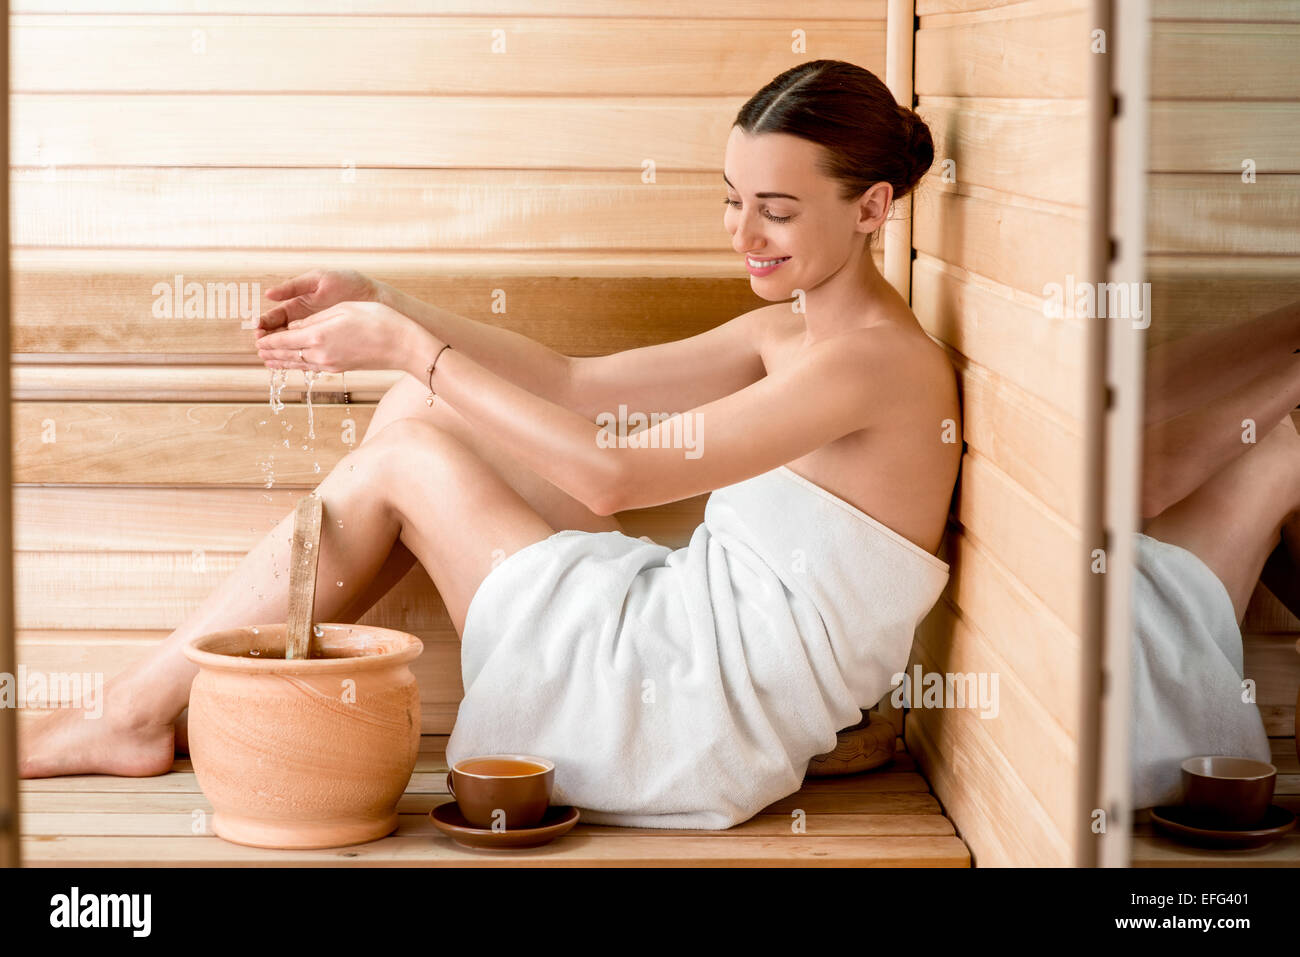 Woman in sauna Stock Photo